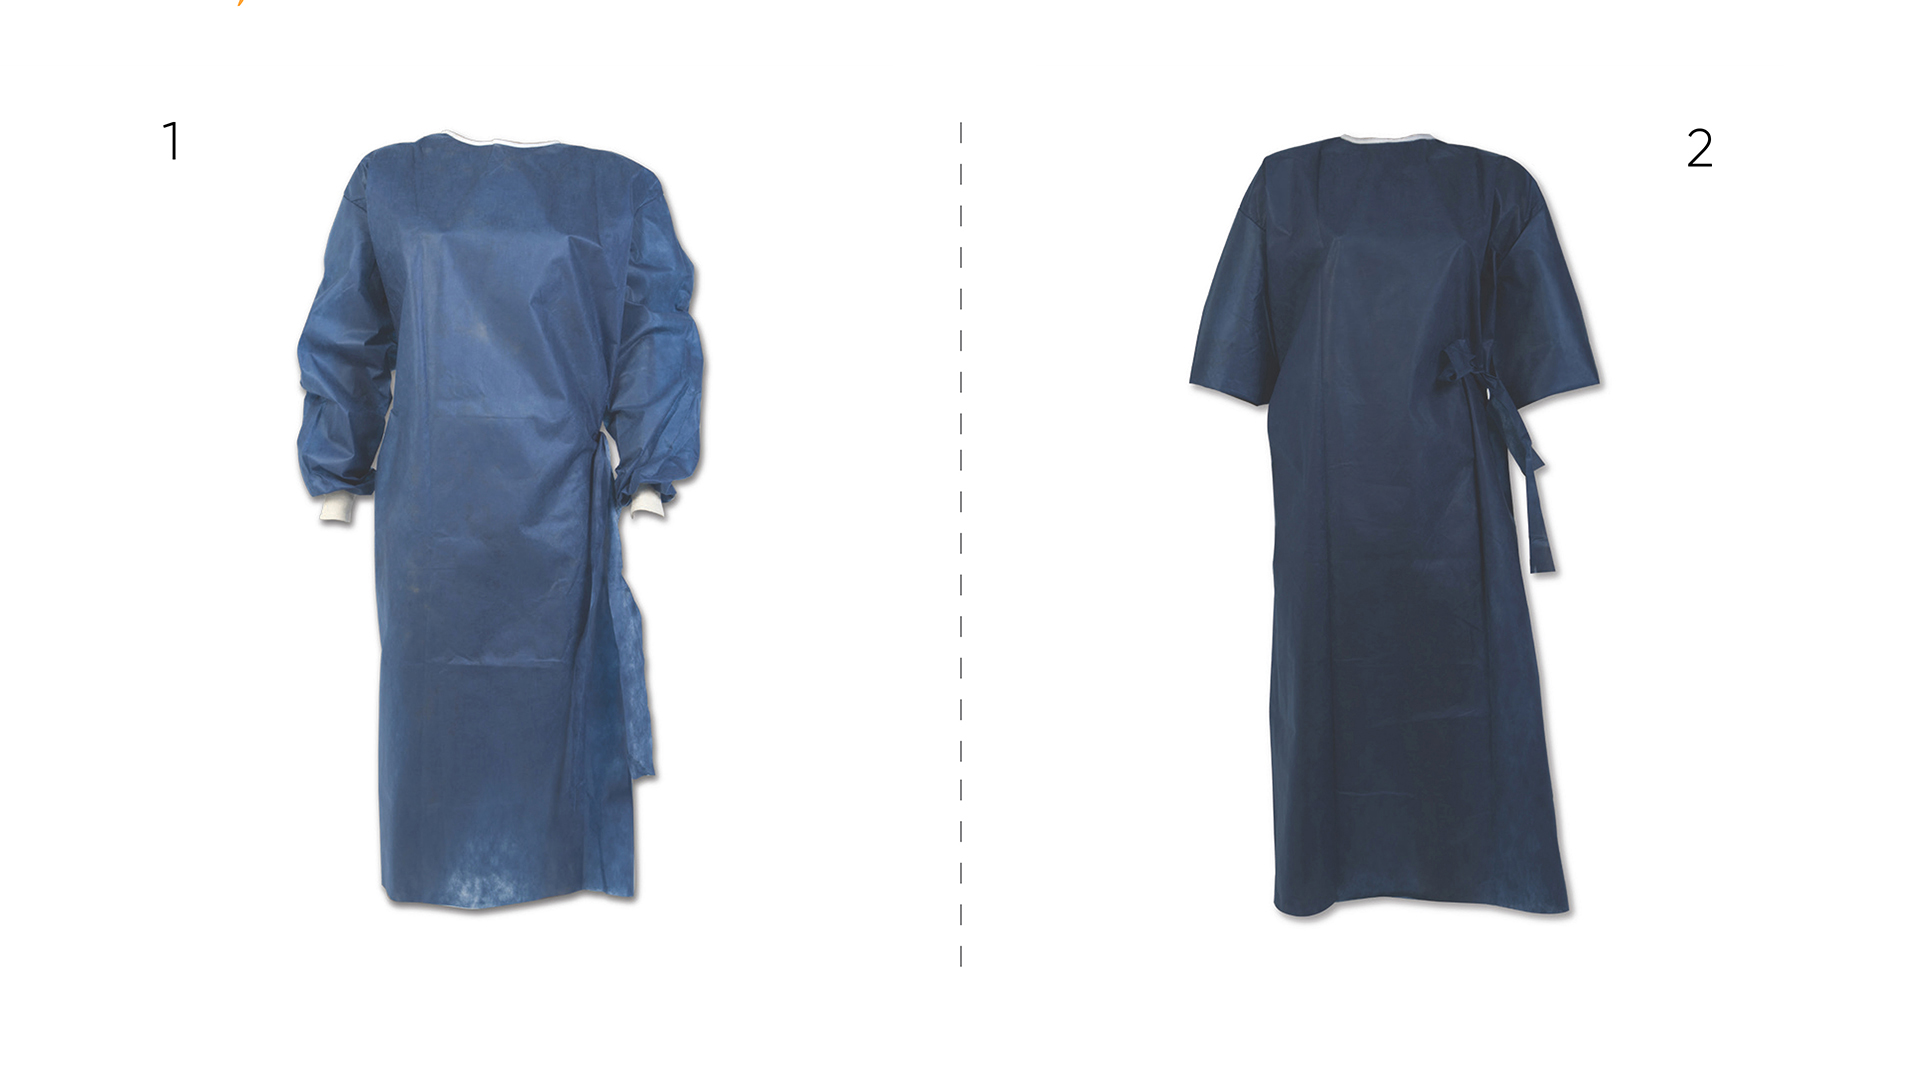 Non-Sterile Patient Garments 2